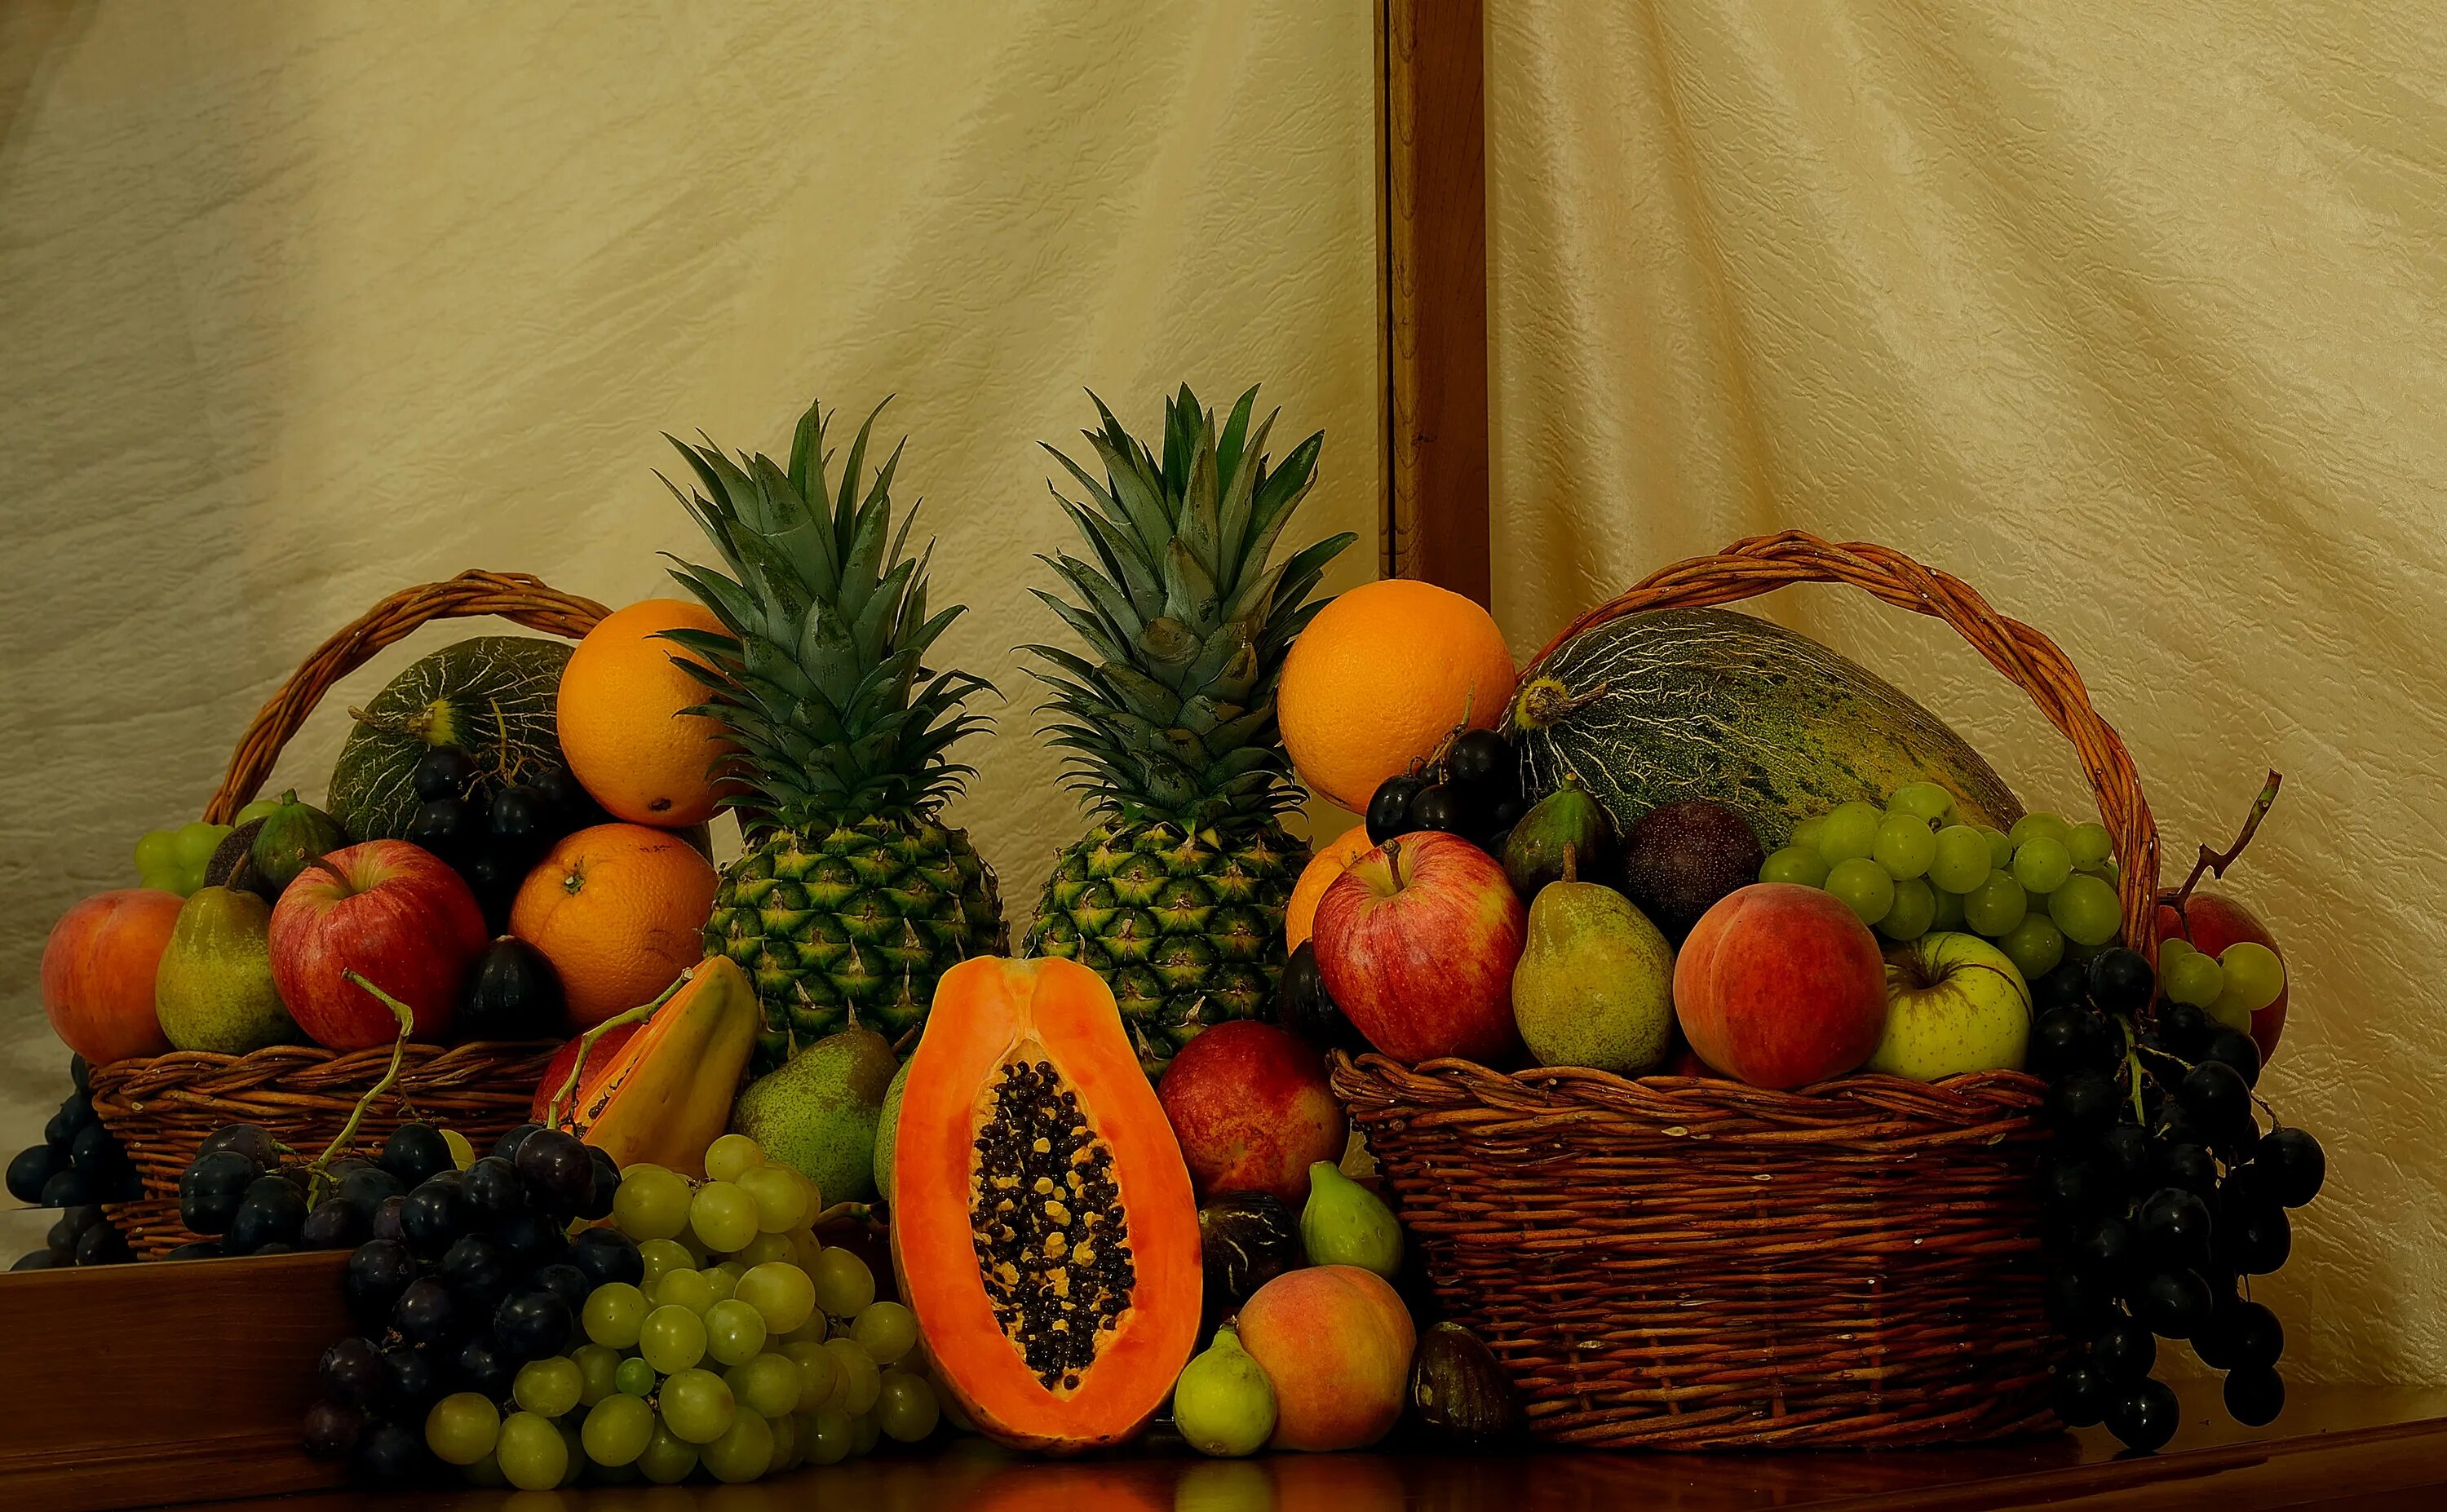 2 11 всех фруктов составляют персики. Фрукты. Фрукты на столе. Корзина с овощами и фруктами. Корзина фруктов на столе.